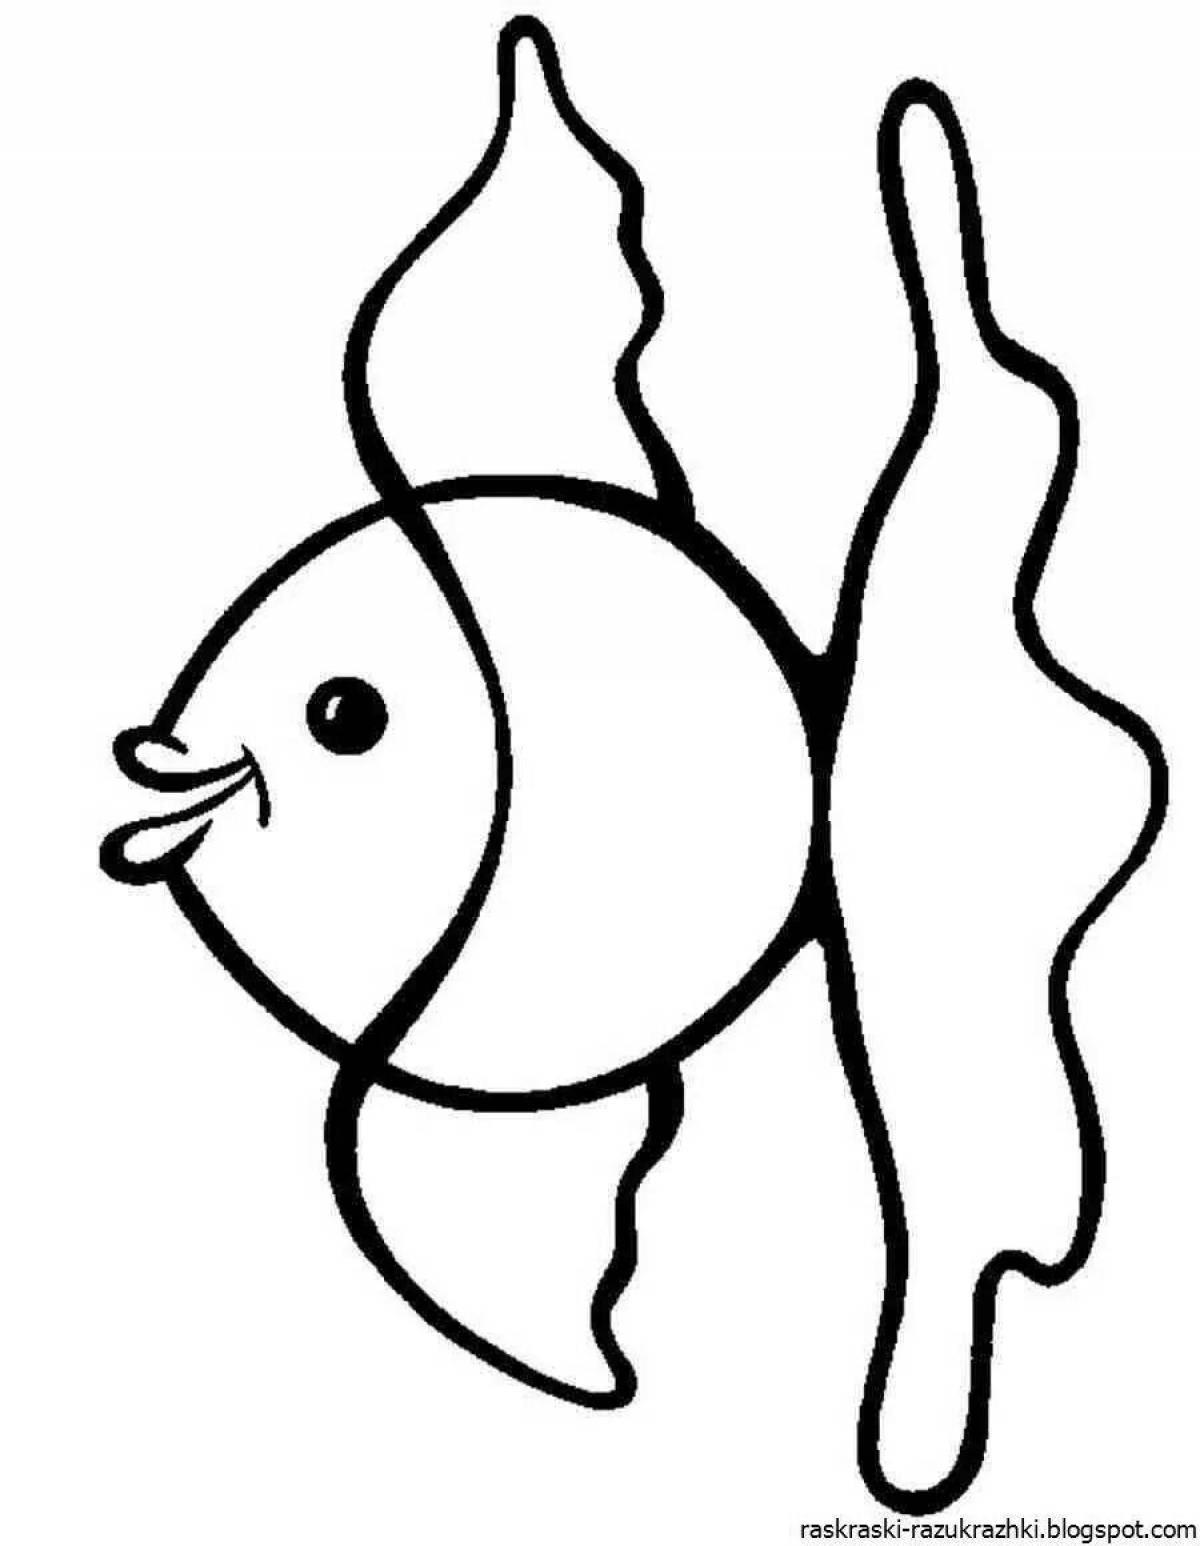 Рыба для ребенка 2. Раскраска рыбка. Рыбка раскраска для детей. Рыбка для раскрашивания для детей. Рыба раскраска для детей.